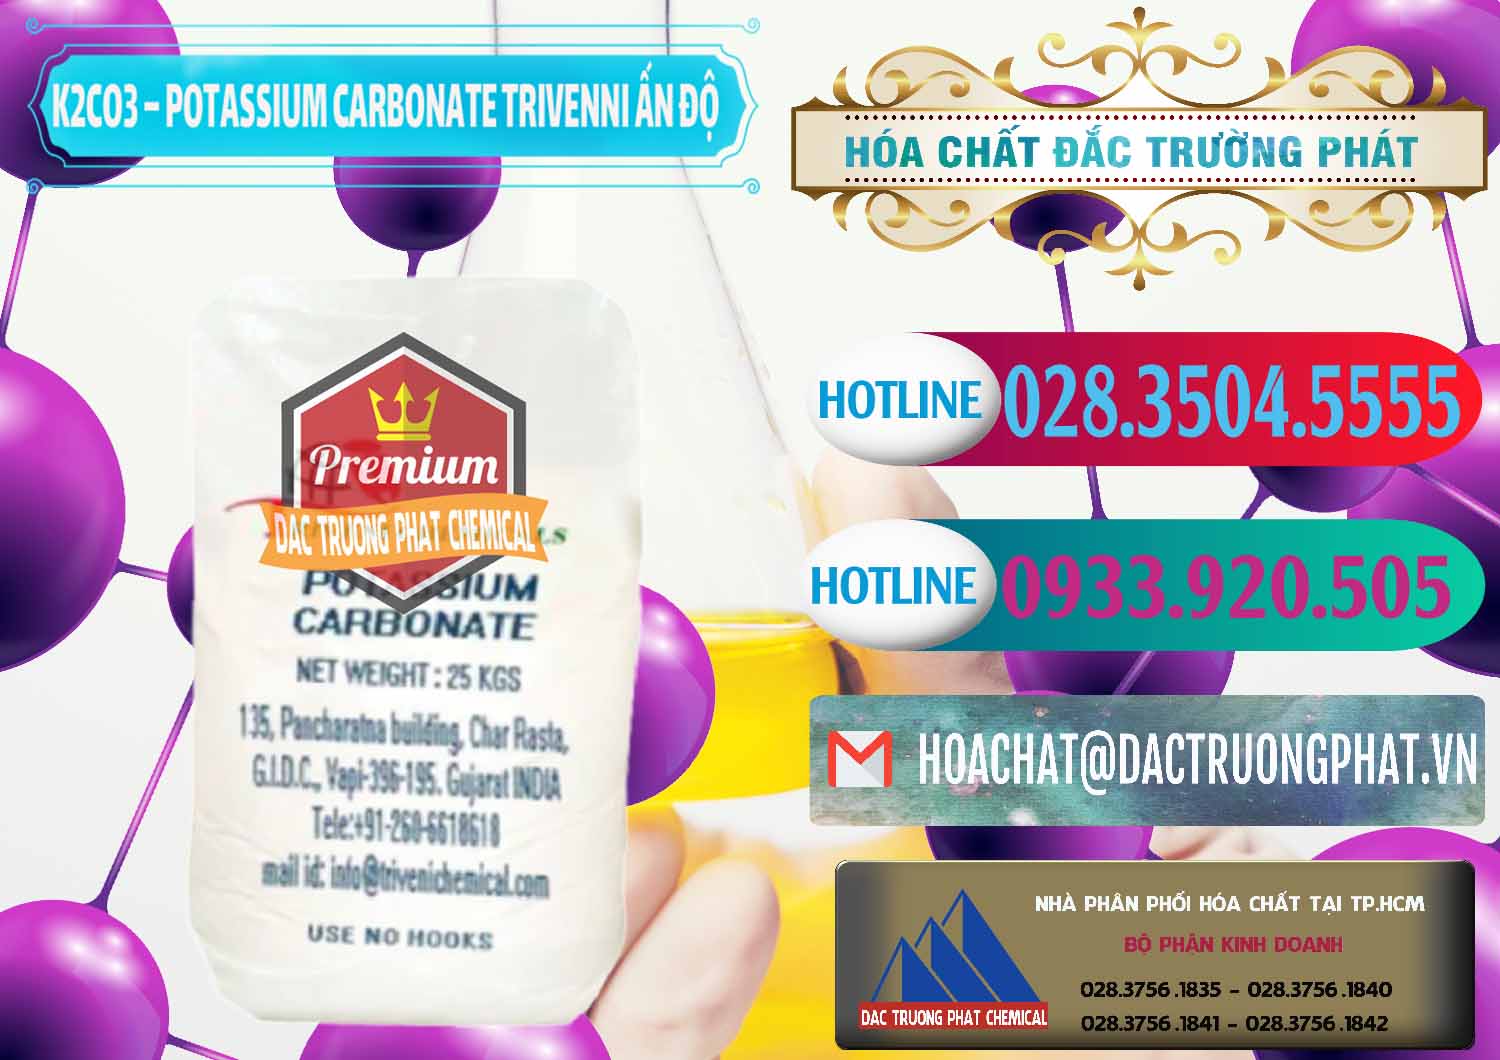 Nơi cung cấp _ bán K2Co3 – Potassium Carbonate Trivenni Ấn Độ India - 0473 - Cty chuyên nhập khẩu _ phân phối hóa chất tại TP.HCM - truongphat.vn